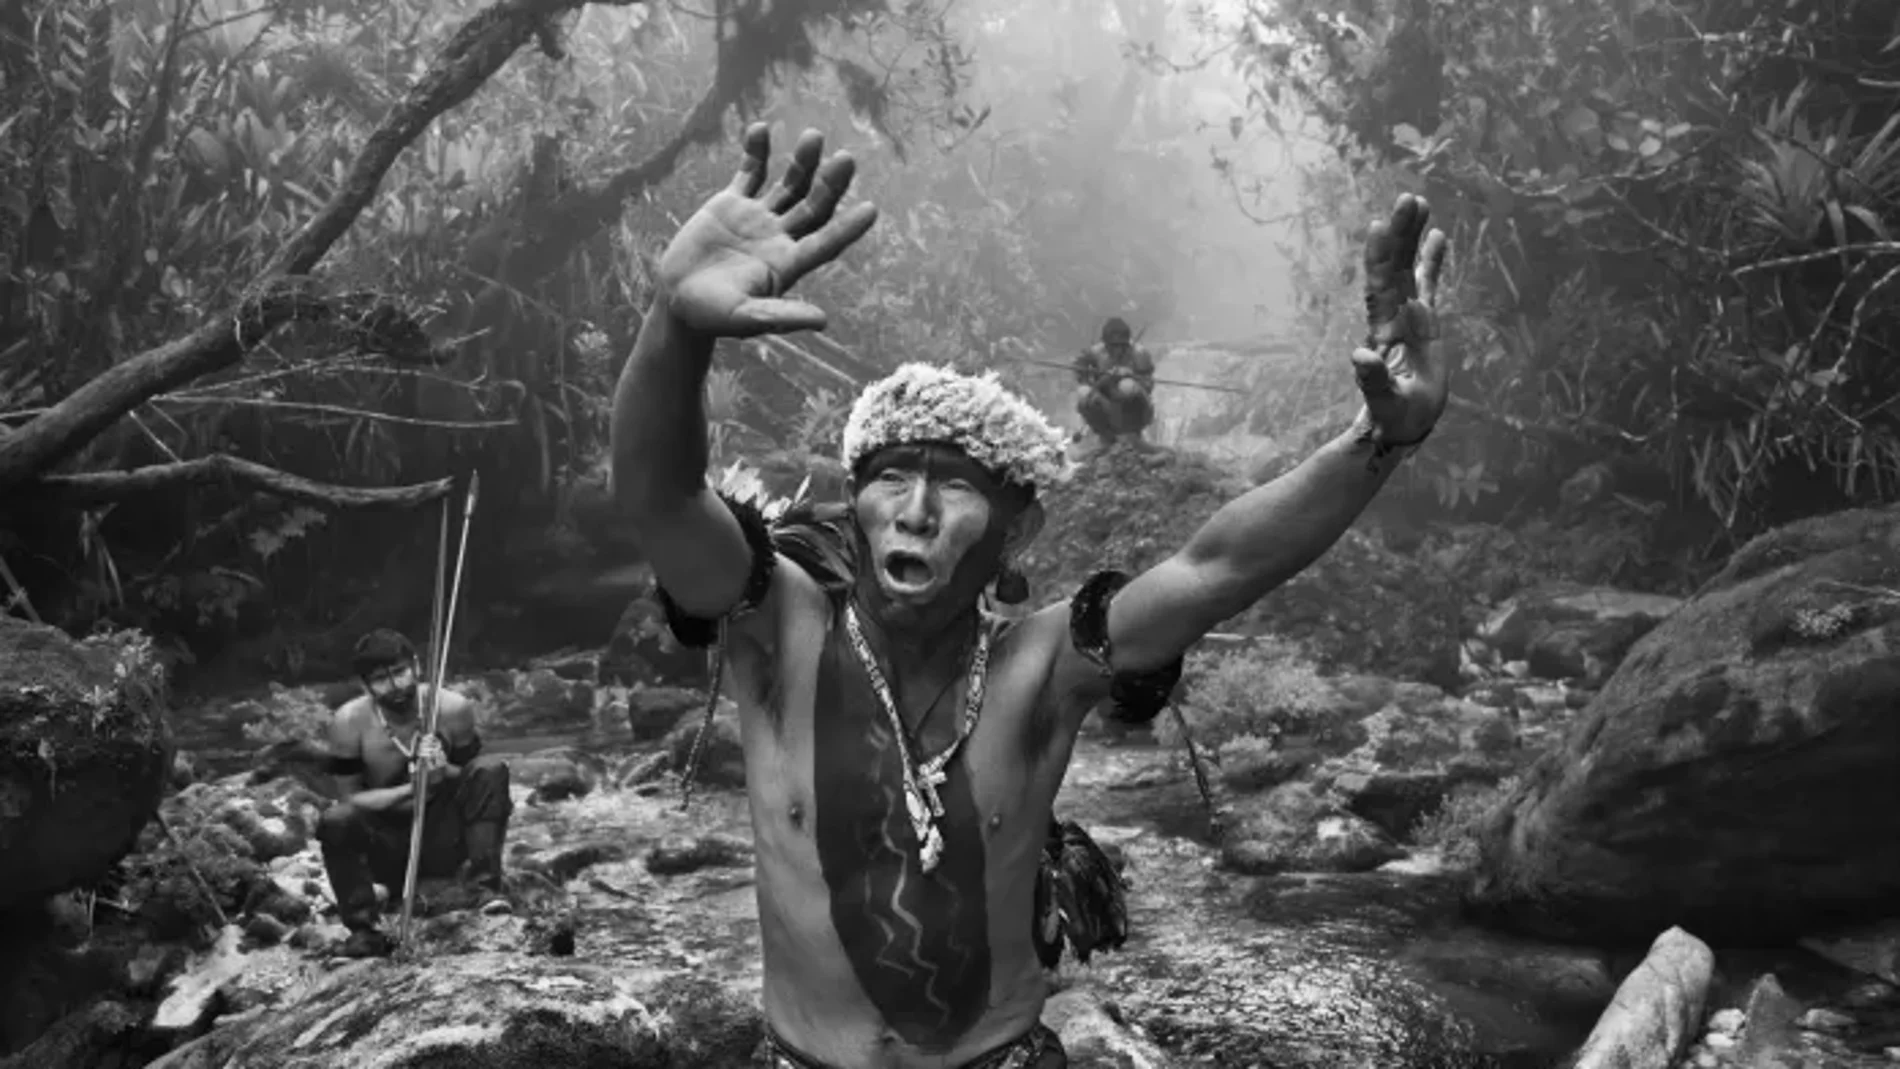 Una de las fotografías que componen "Amazônia", la exposición de Sebastiao Salgado